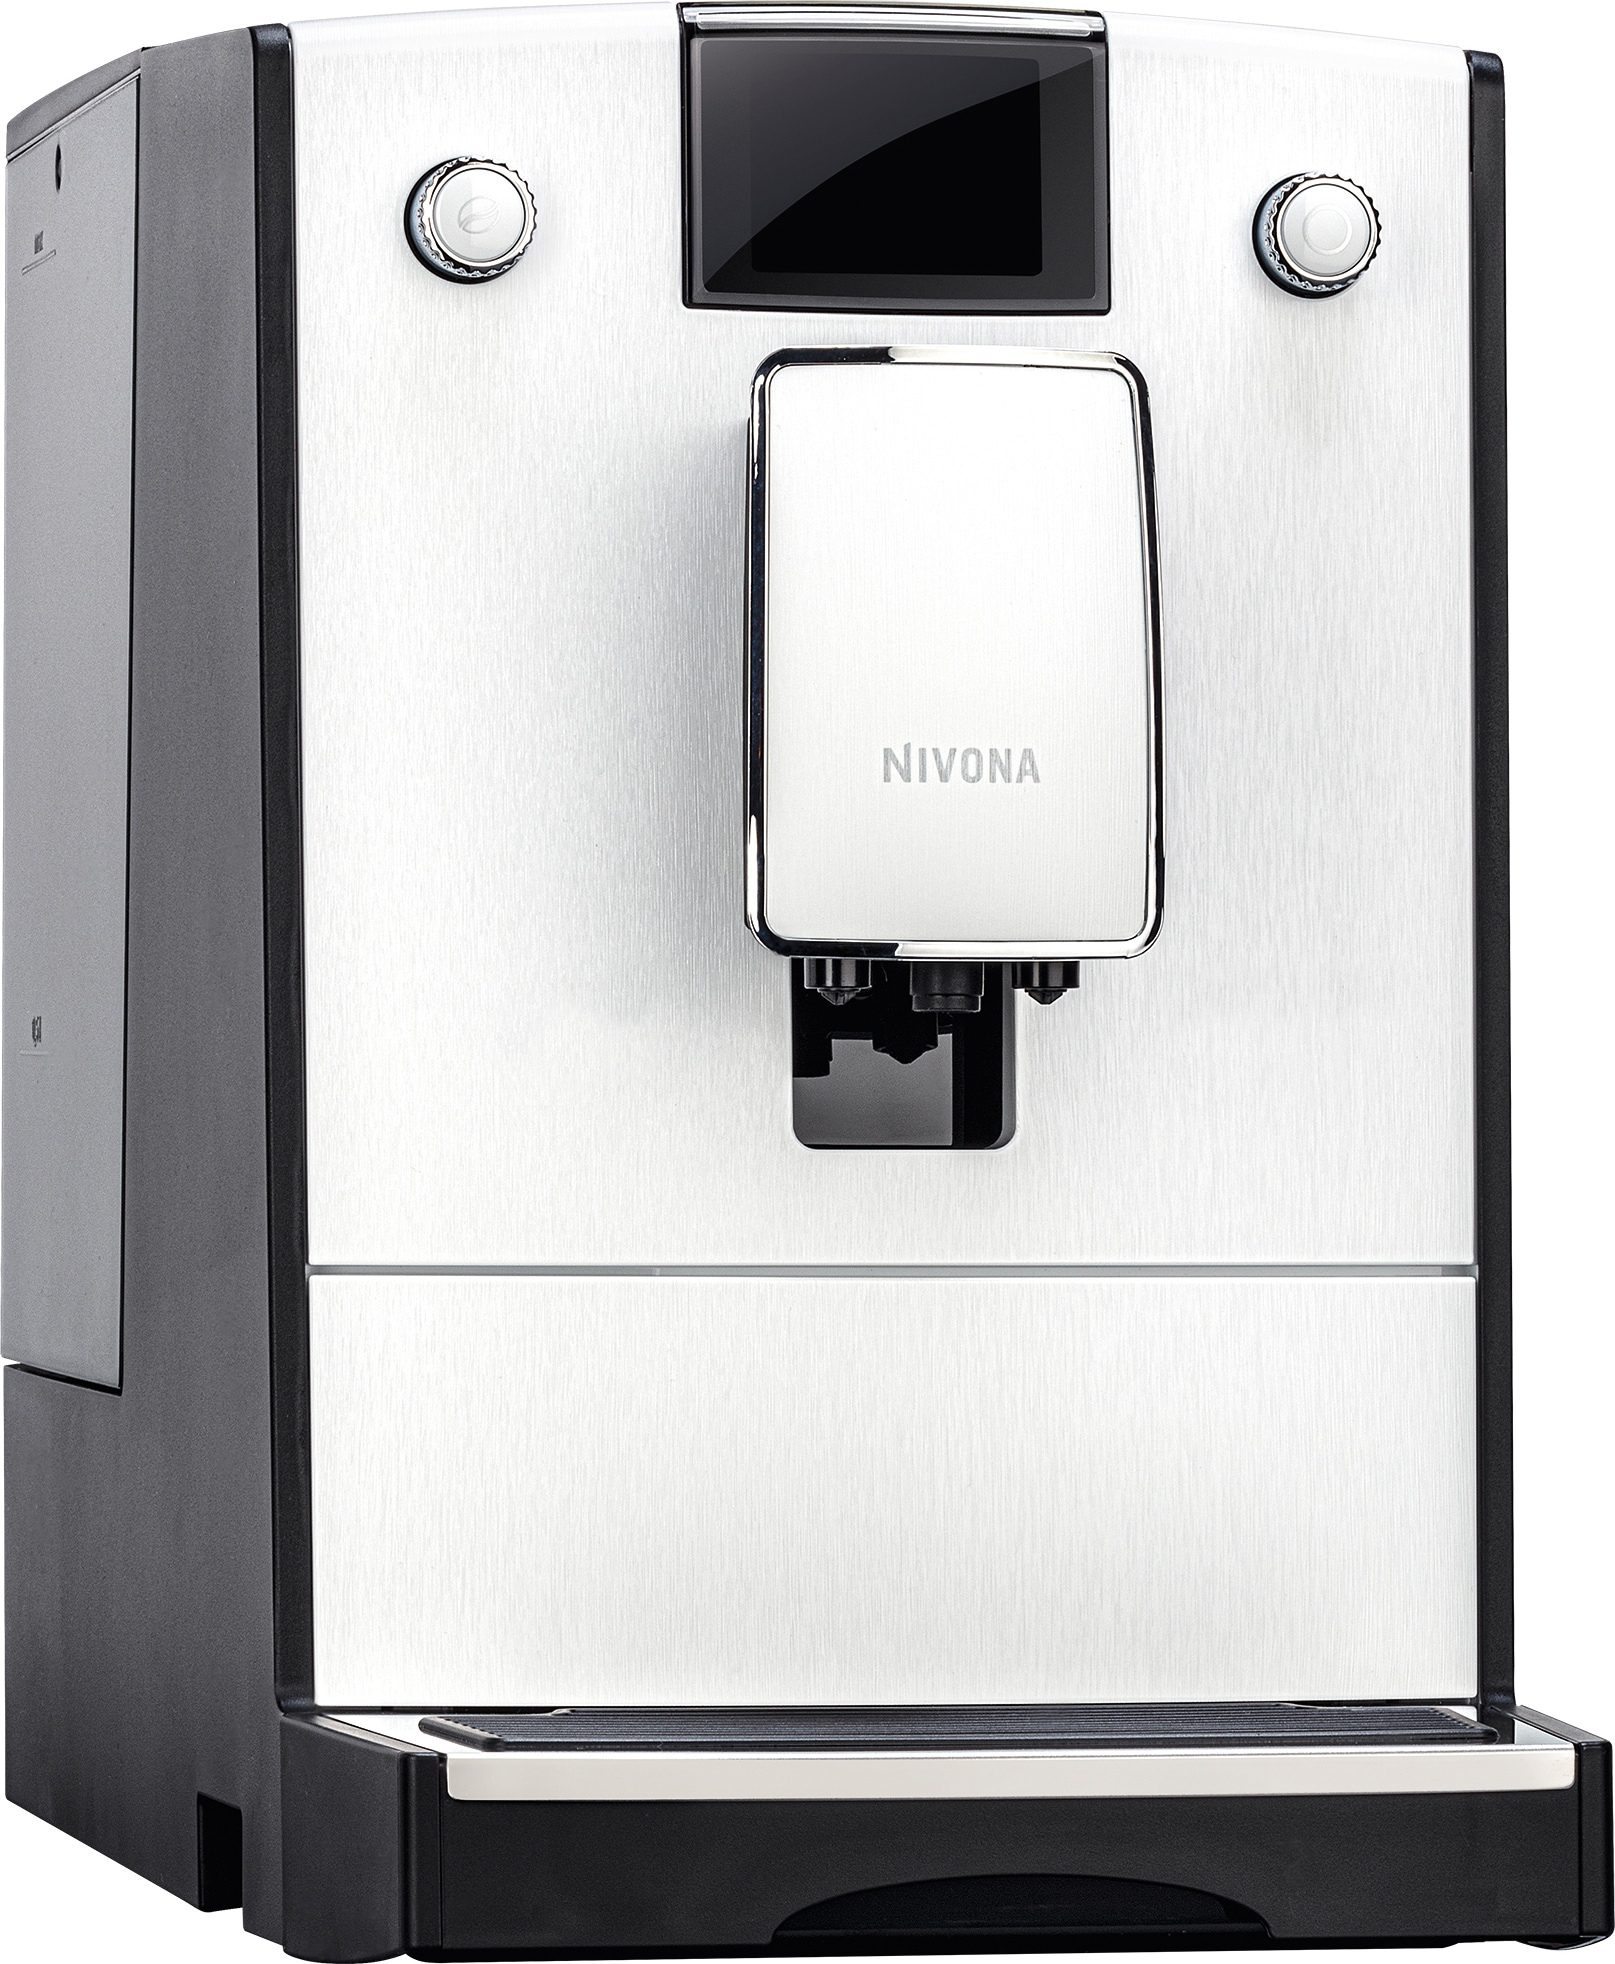 Nivona 7 Series espressomaskine NICR779 (hvid) | Elgiganten